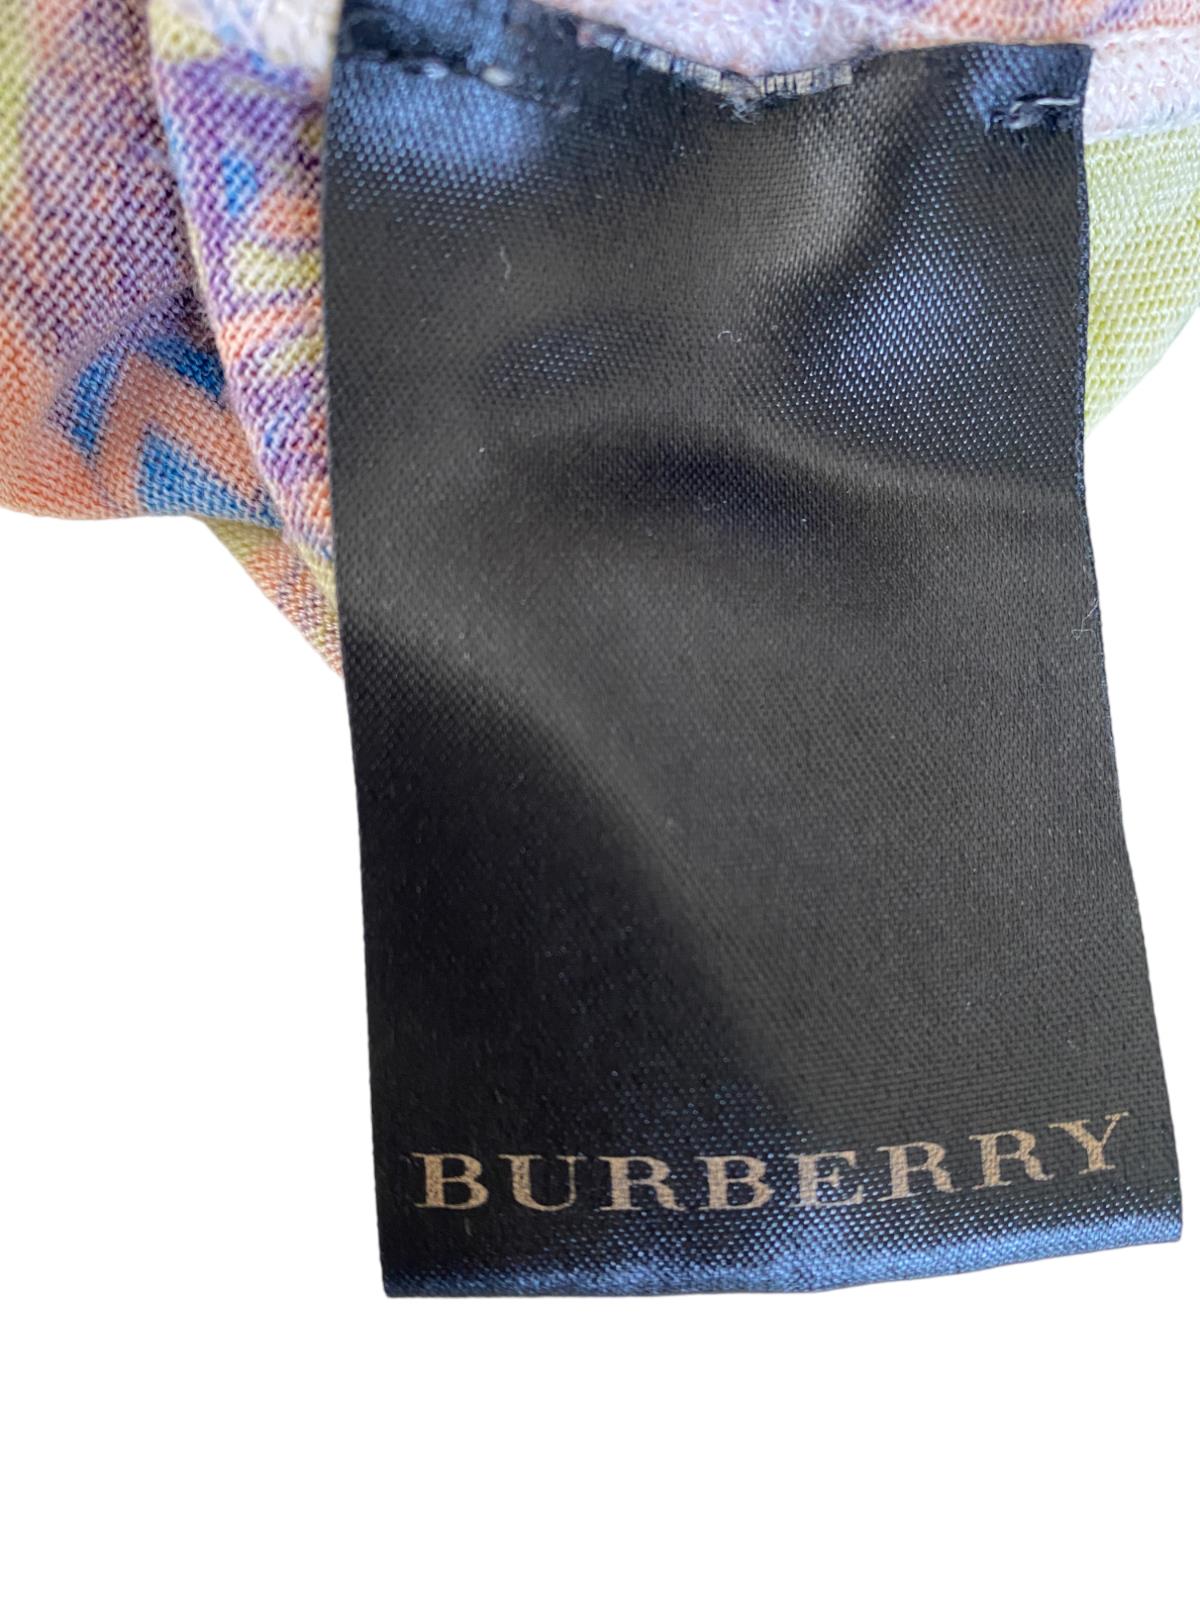 Burberry Merino Wool Jumper/Sweater | Sz Small, Green/Orange/Blue Cyclist Print